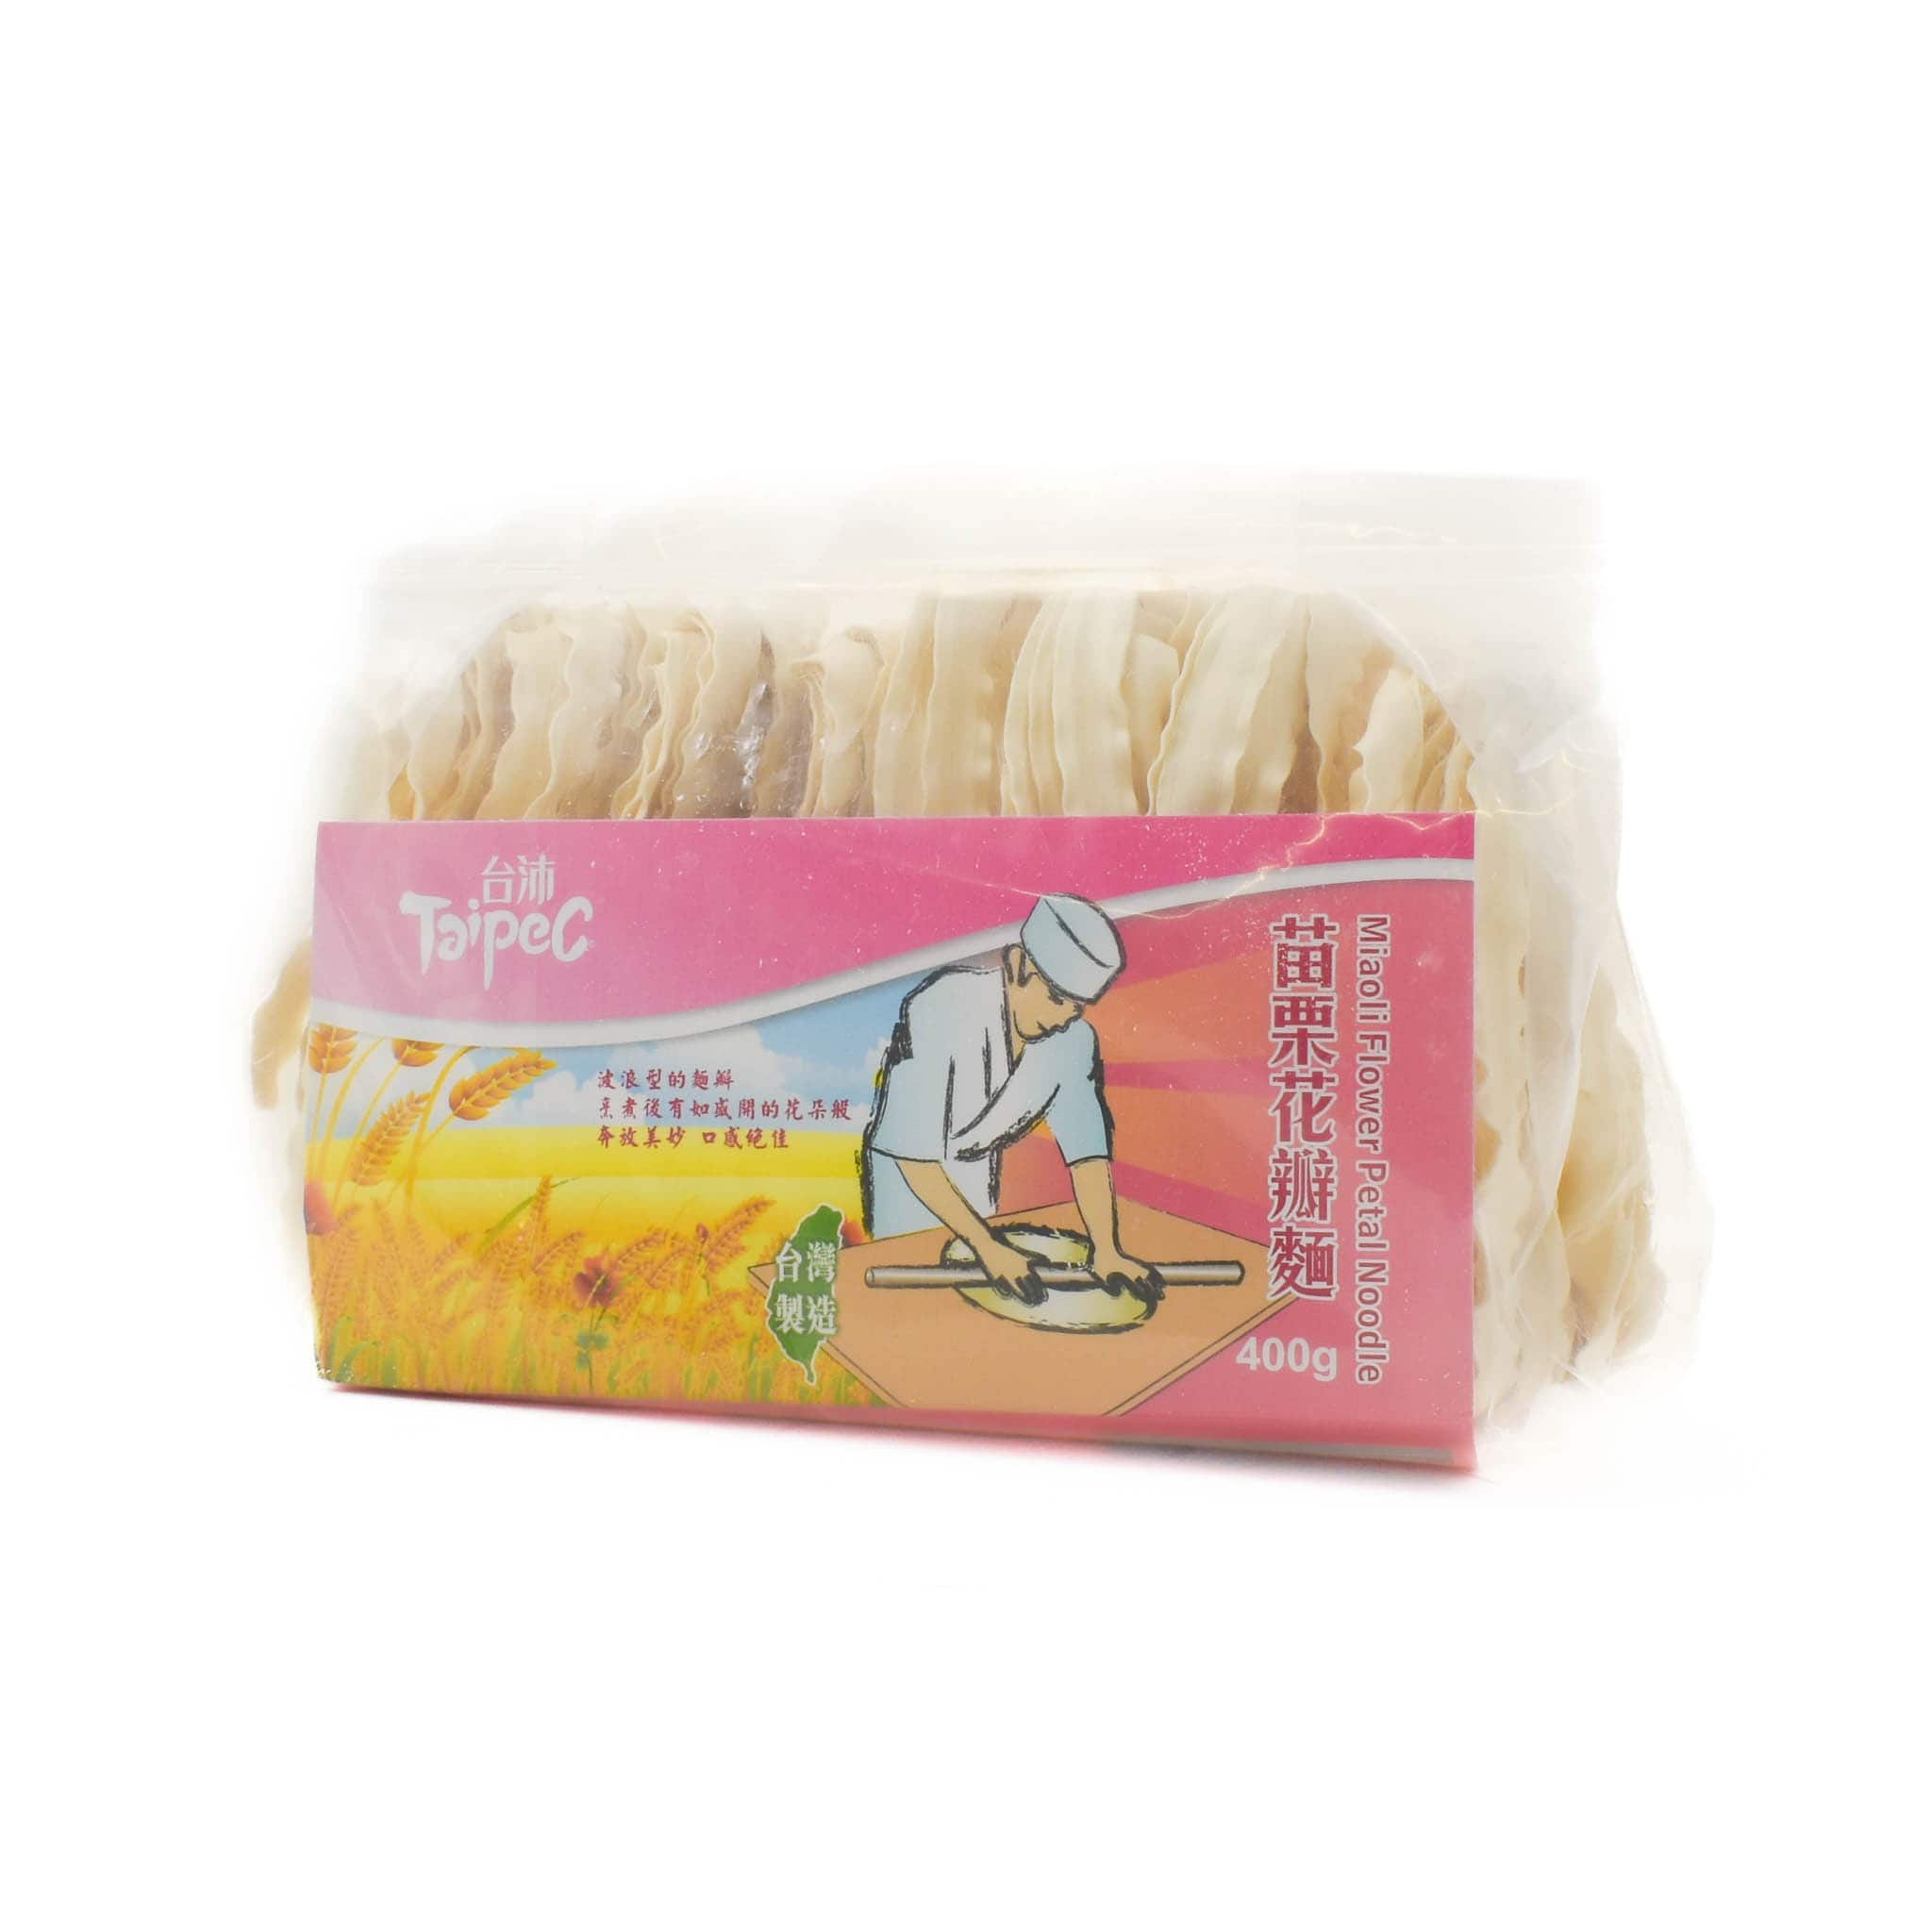 Taiwan Miaoli Flower Pasta Noodle, 400g